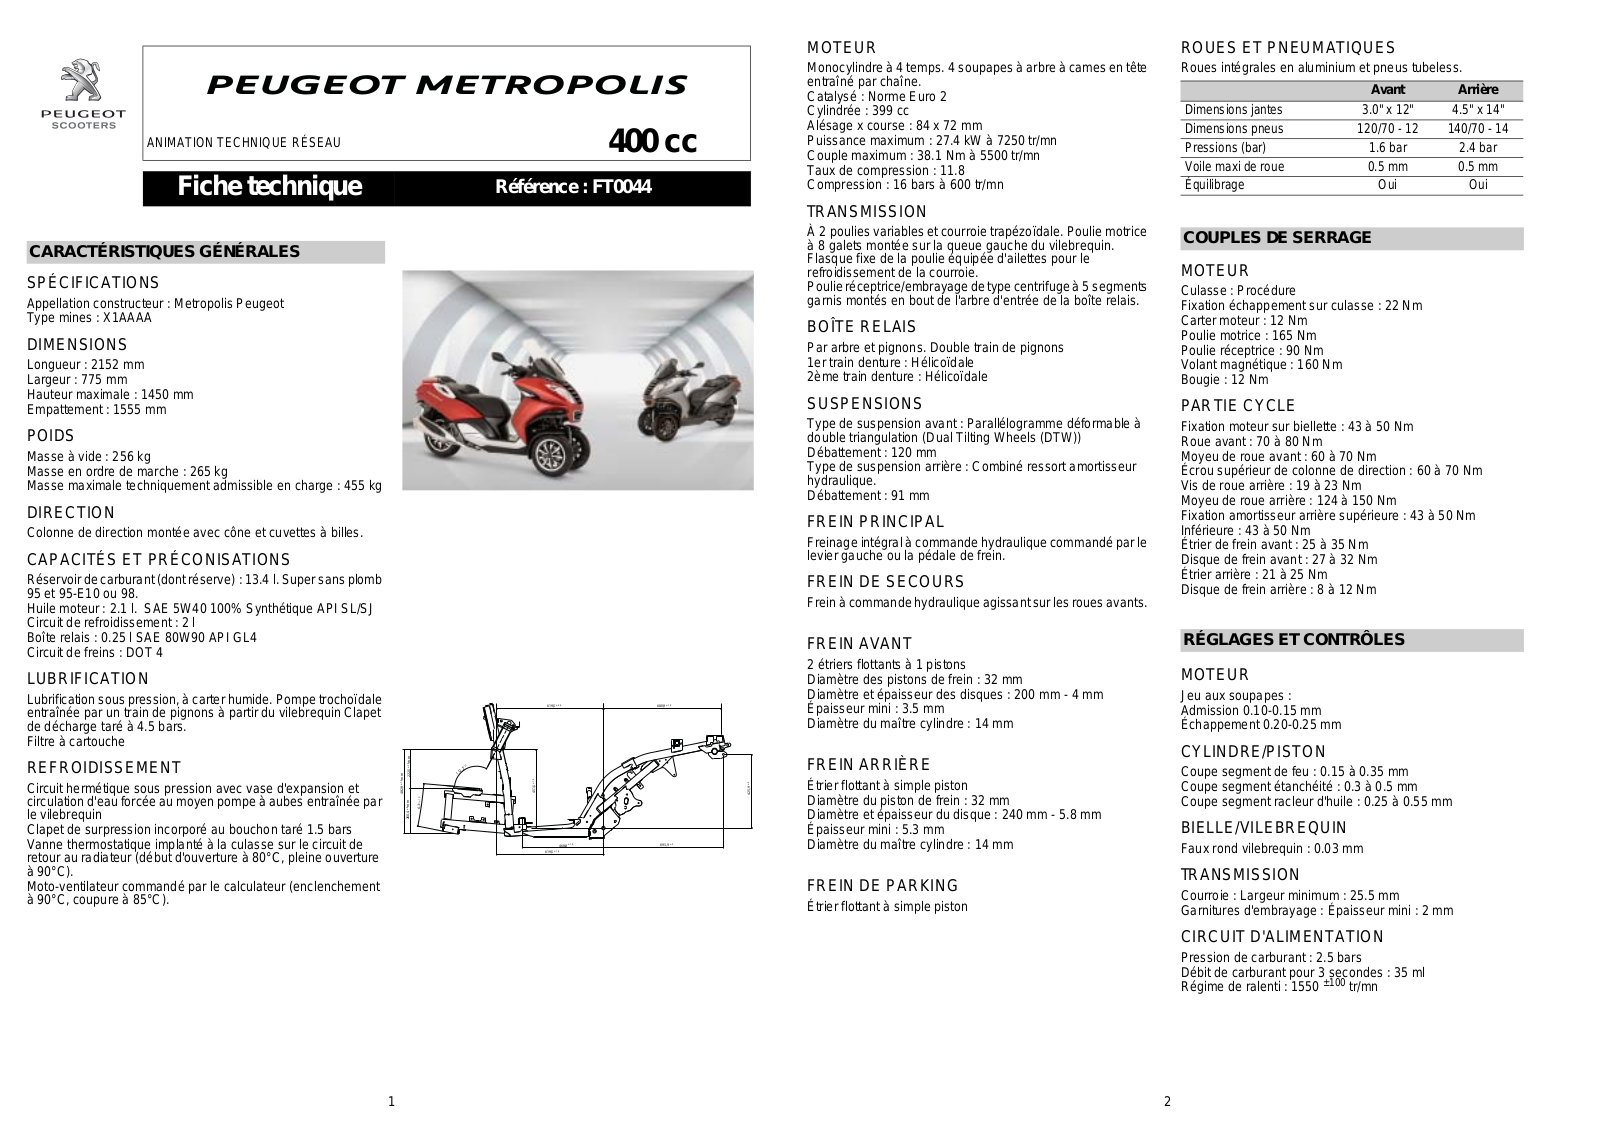 PEUGEOT Metropolis 400 User Manual